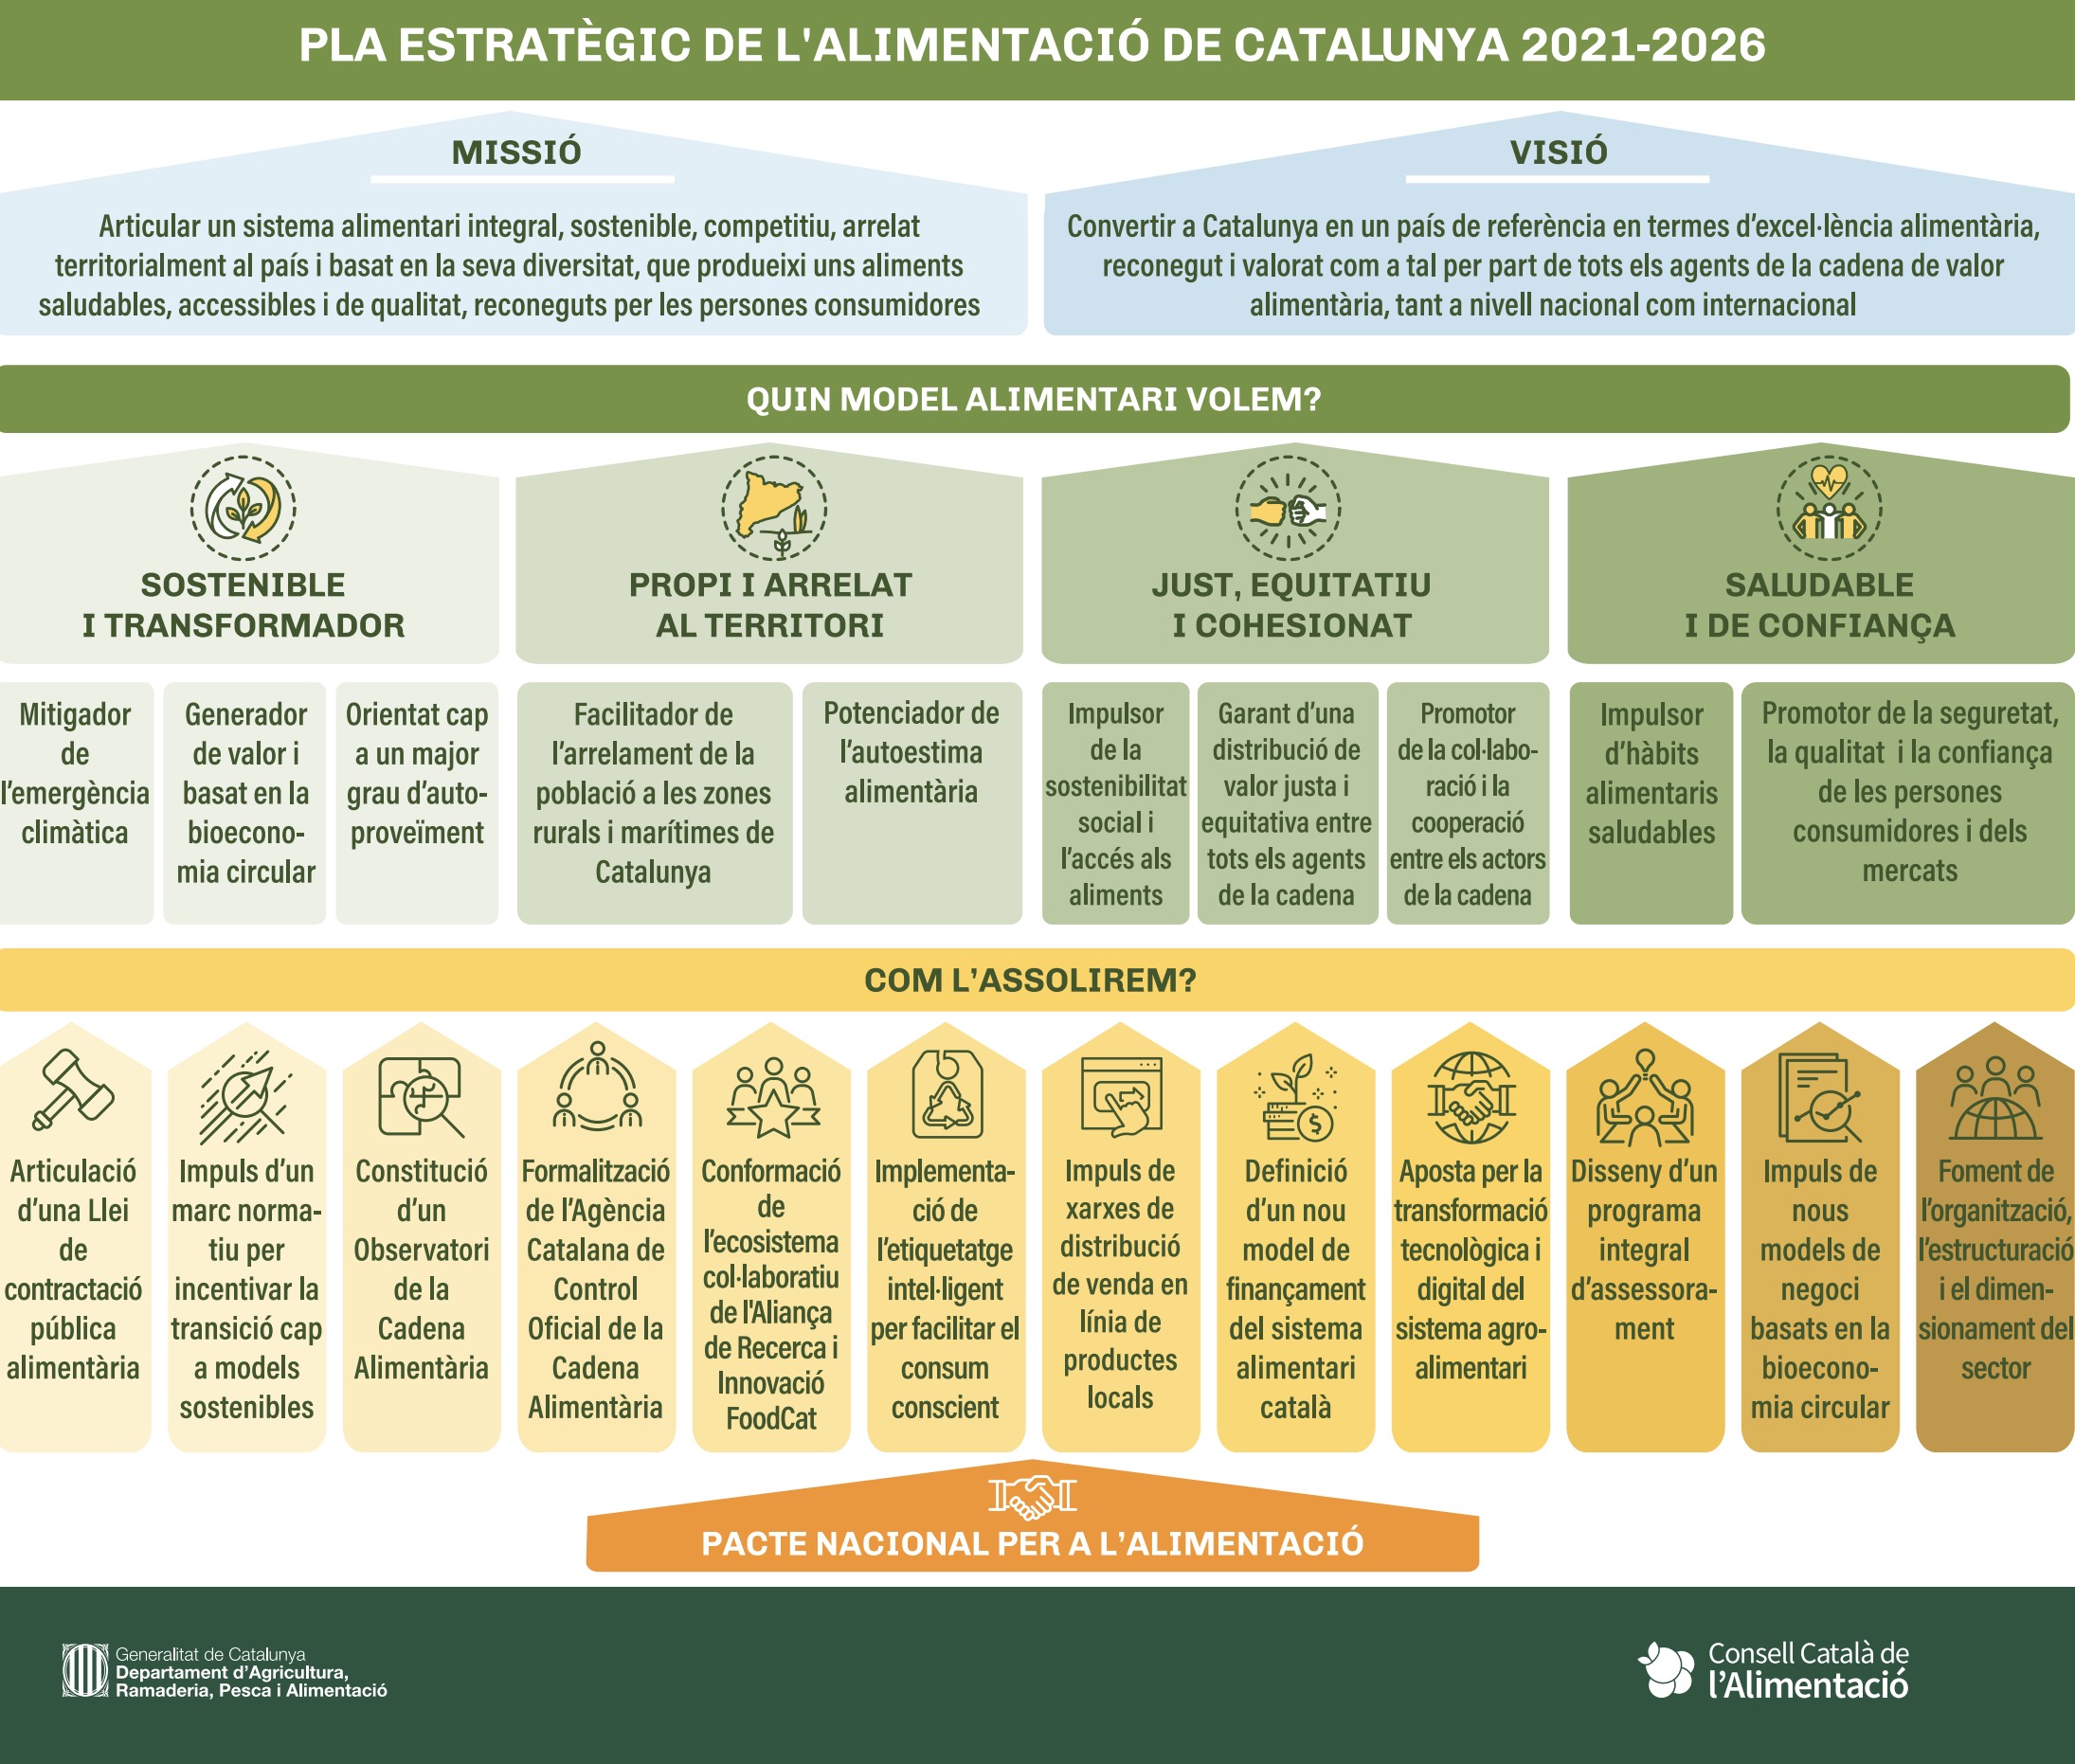 Pla estratègic de l’alimentació de Catalunya 2021-2026